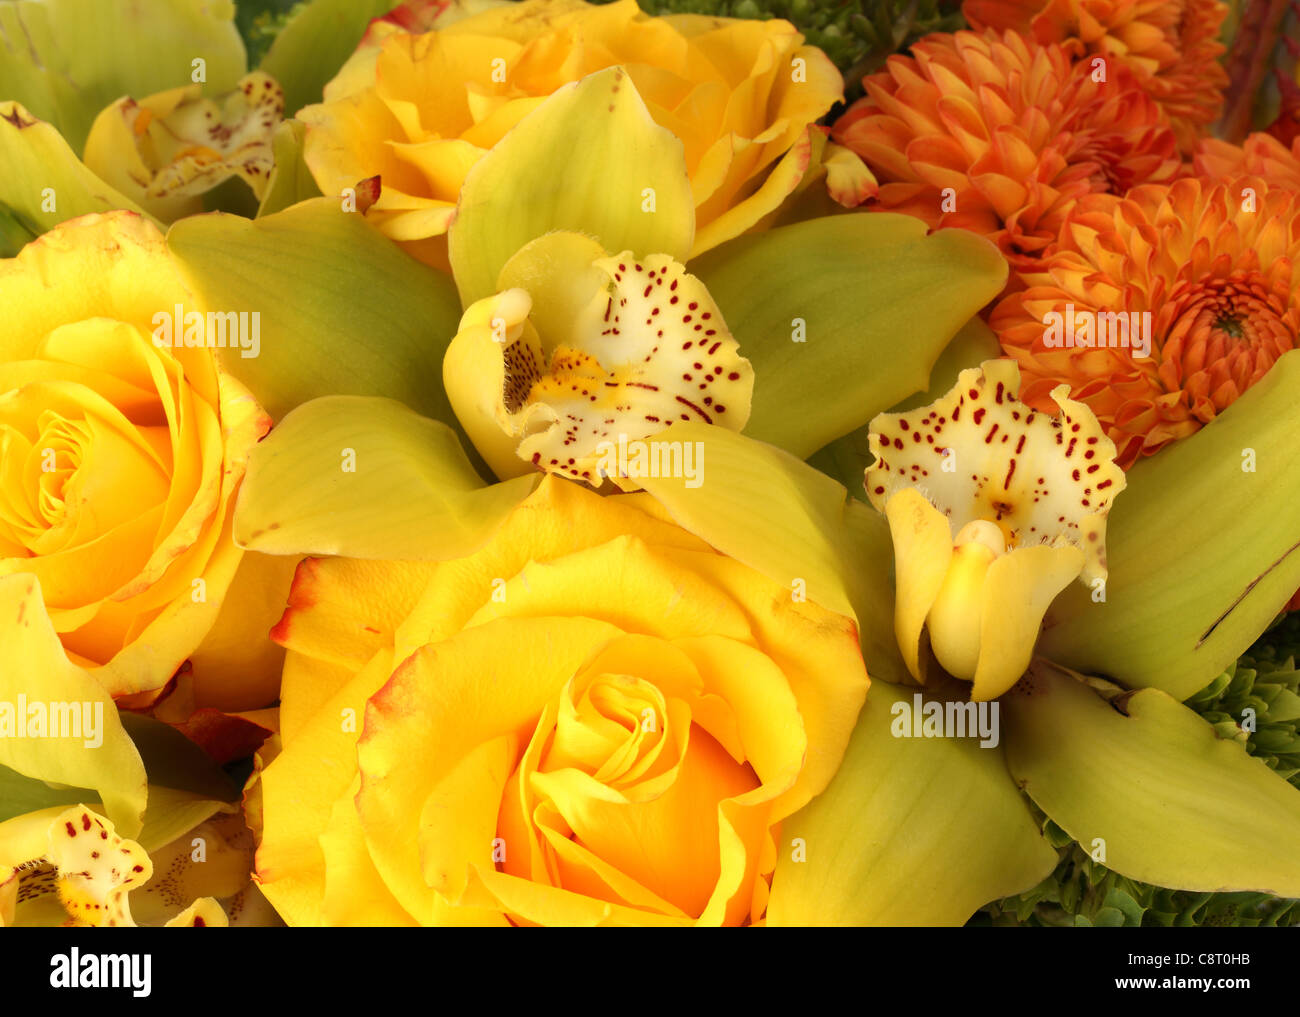 Eine Nahaufnahme von einem bunten Blumenstrauß. Gelbe Rosen, orange Dahlien, gelbe Cymbidium Orchideen, orange Freesien, Hortensie Stockfoto